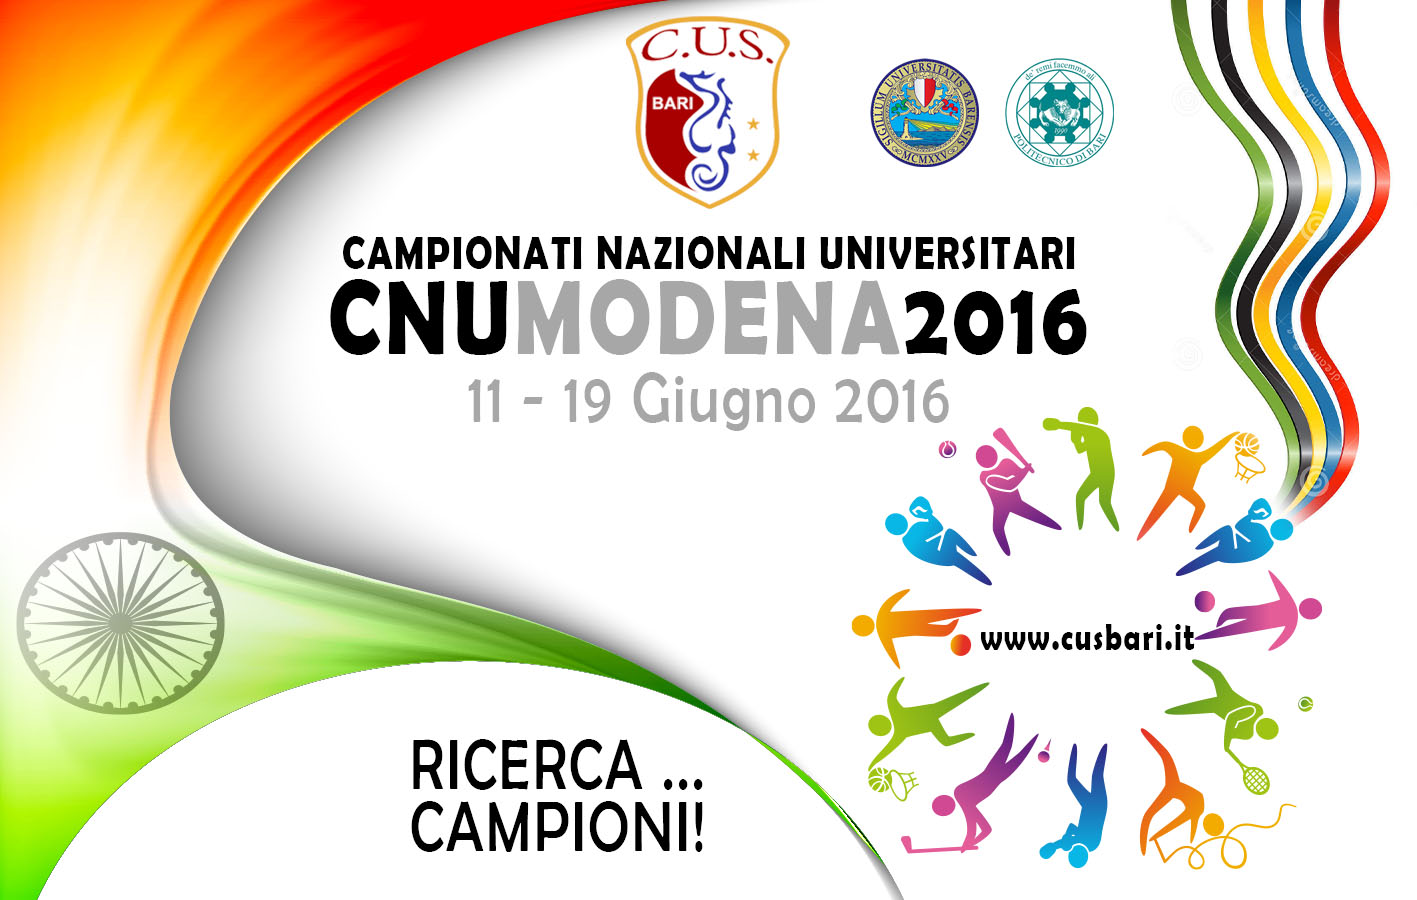 Campionati Italiani Universitari 2016 Reggio Emilia 11-13 Giugno - INFO E MODALITA PARTECIPAZIONE #CNU2016